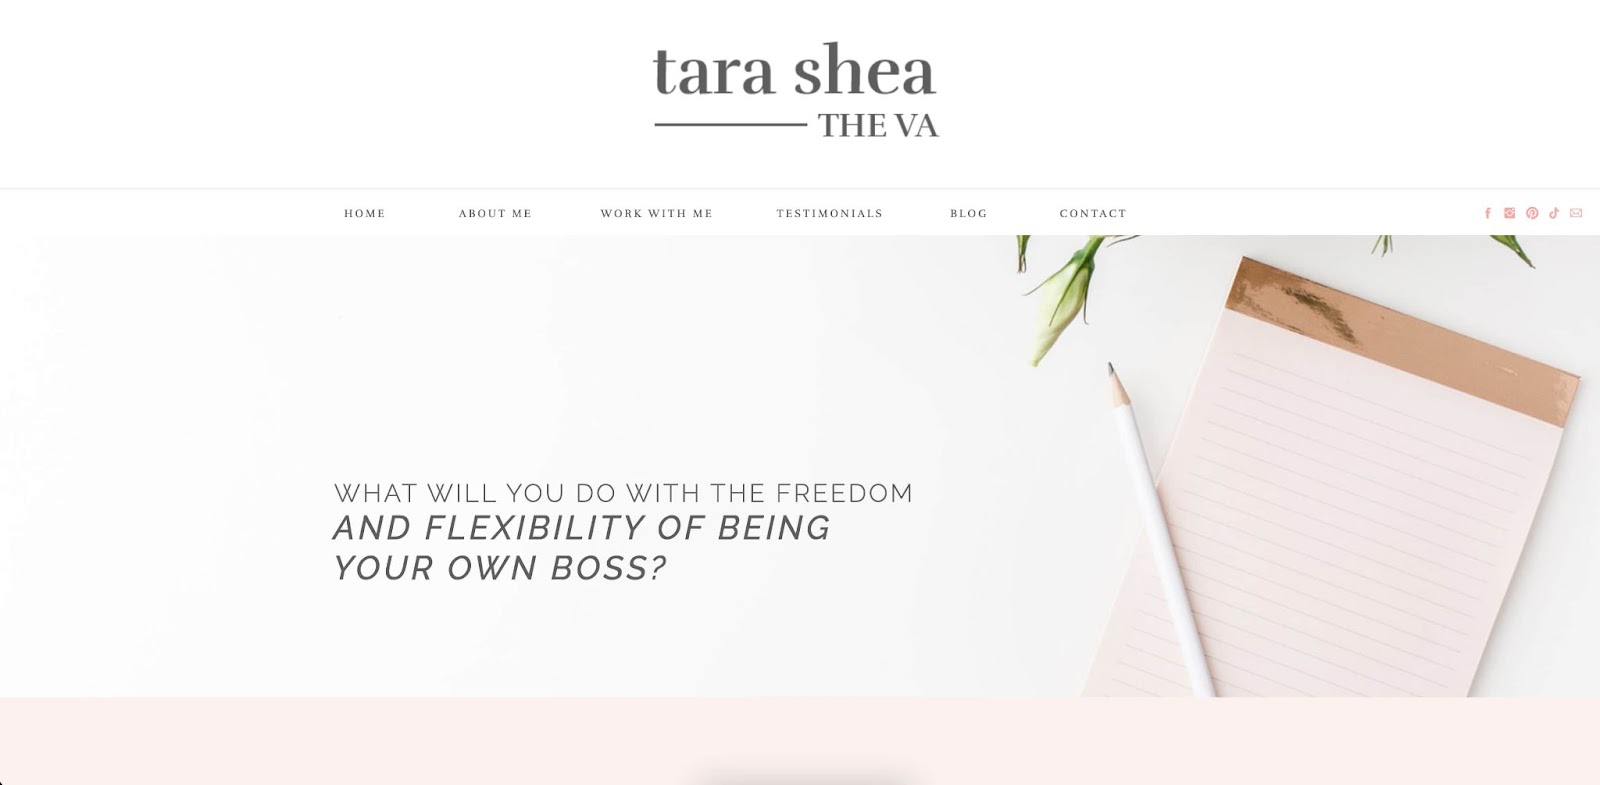 tara shea virtual assistant website example